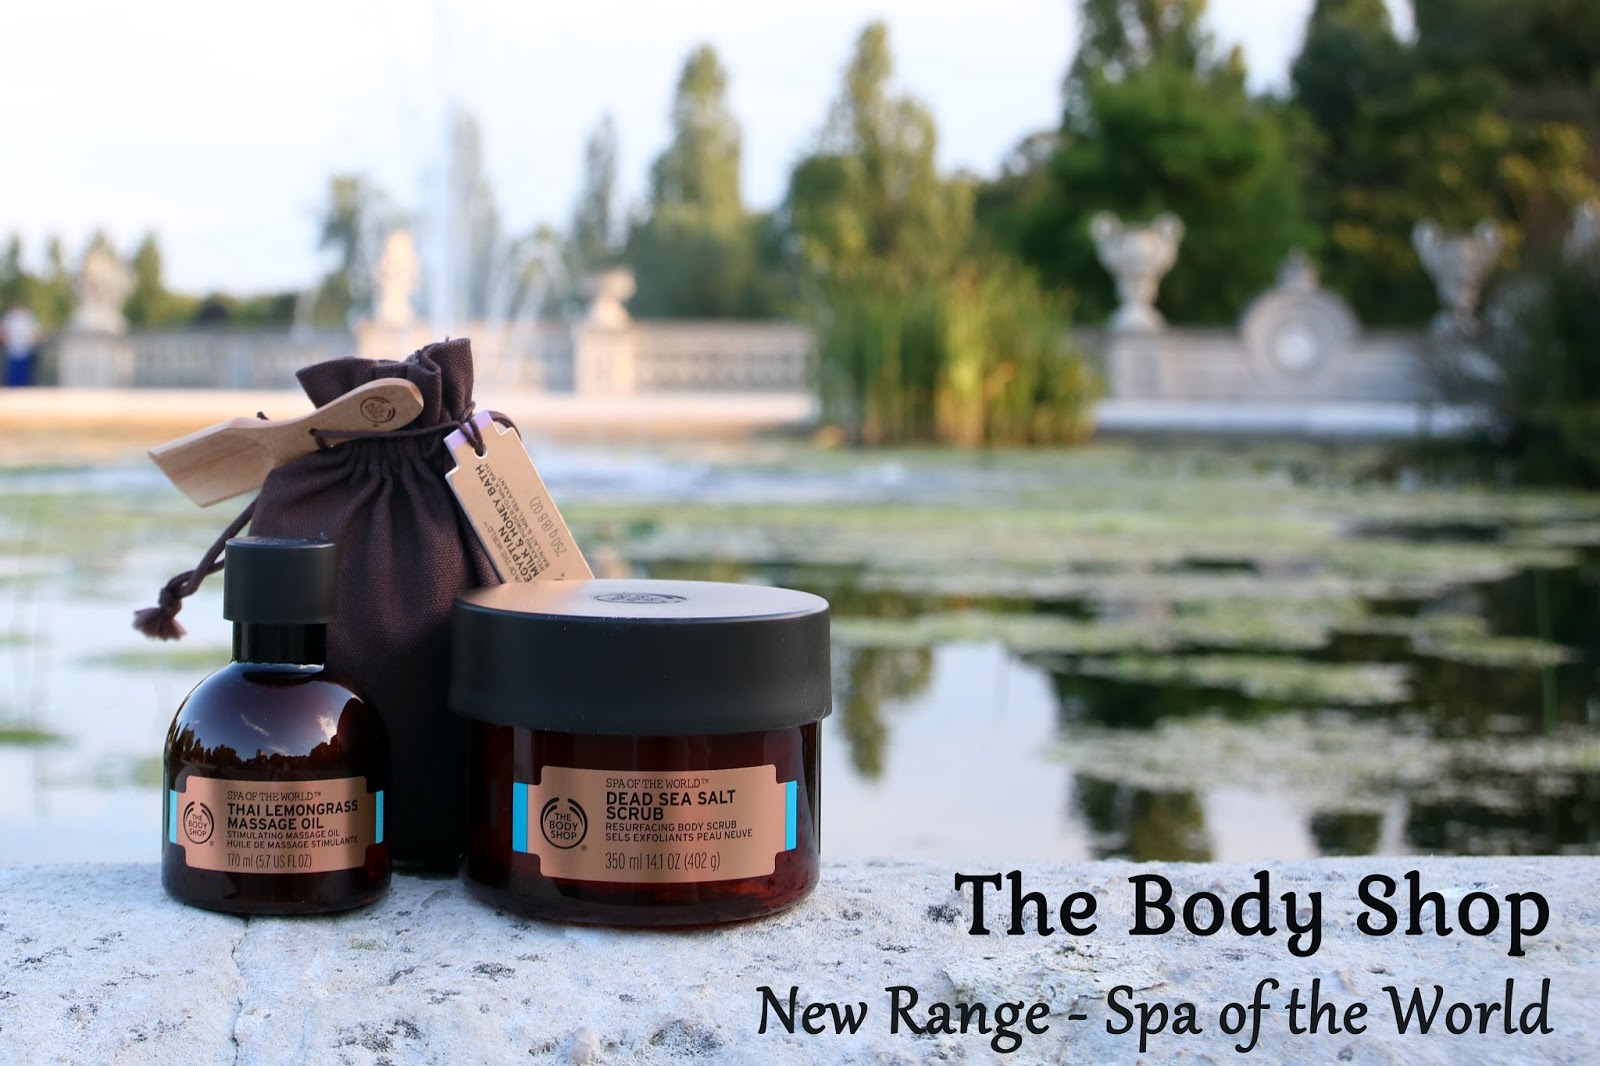 The Body Shop's New Range: Spa of the World Liviatiana